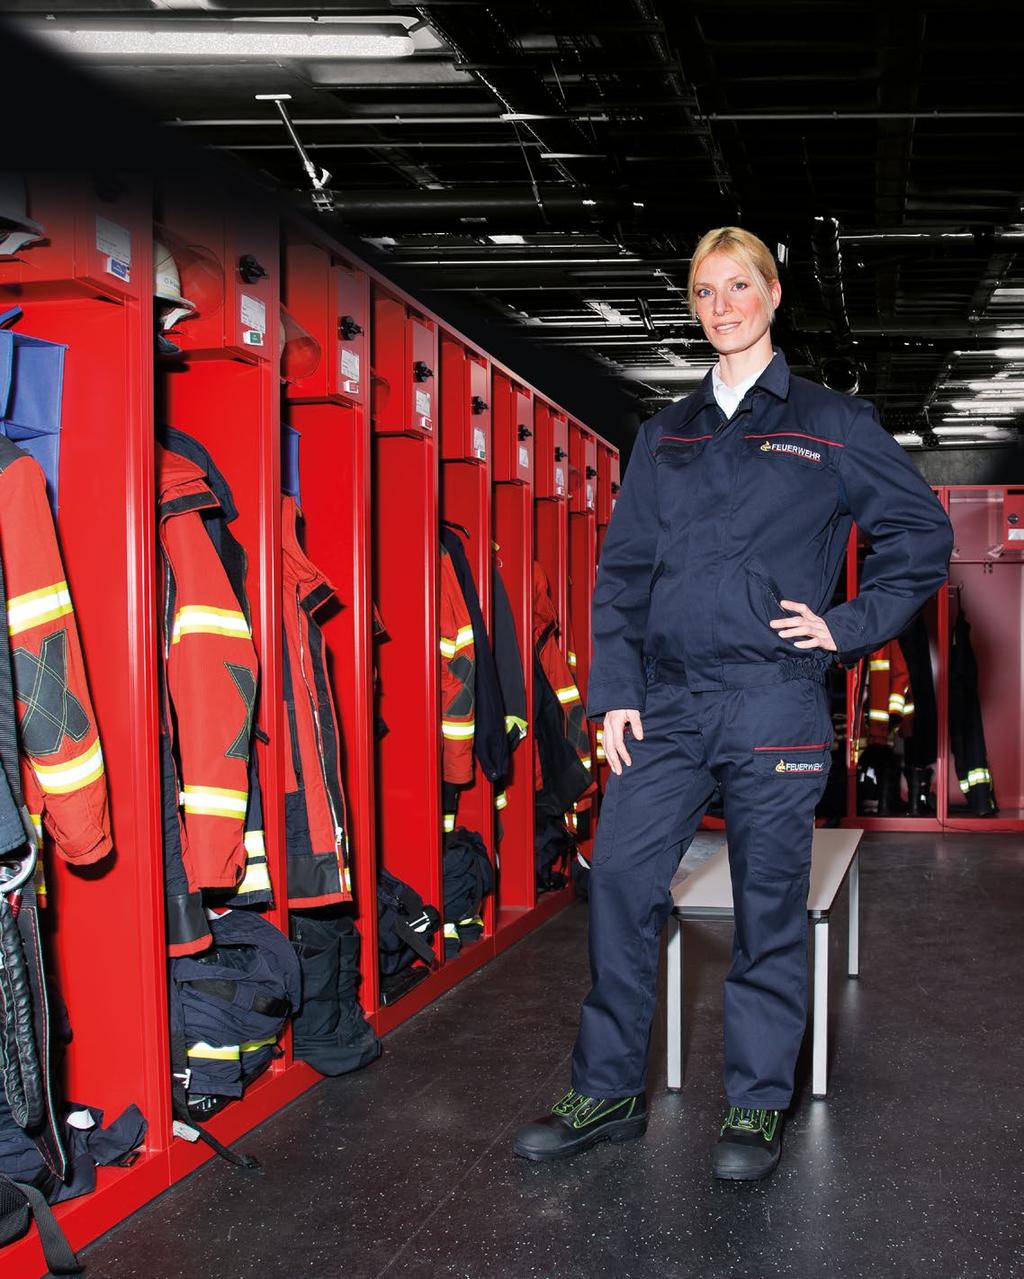 TESIMAX - Partner der Feuerwehren Station Wear Dienstkleidung von Tesimax Die neue Feuerwehrbekleidung aus dem Hause TESIMAX überzeugt durch Robustheit, Innovation und hervorragenden Tragekomfort -